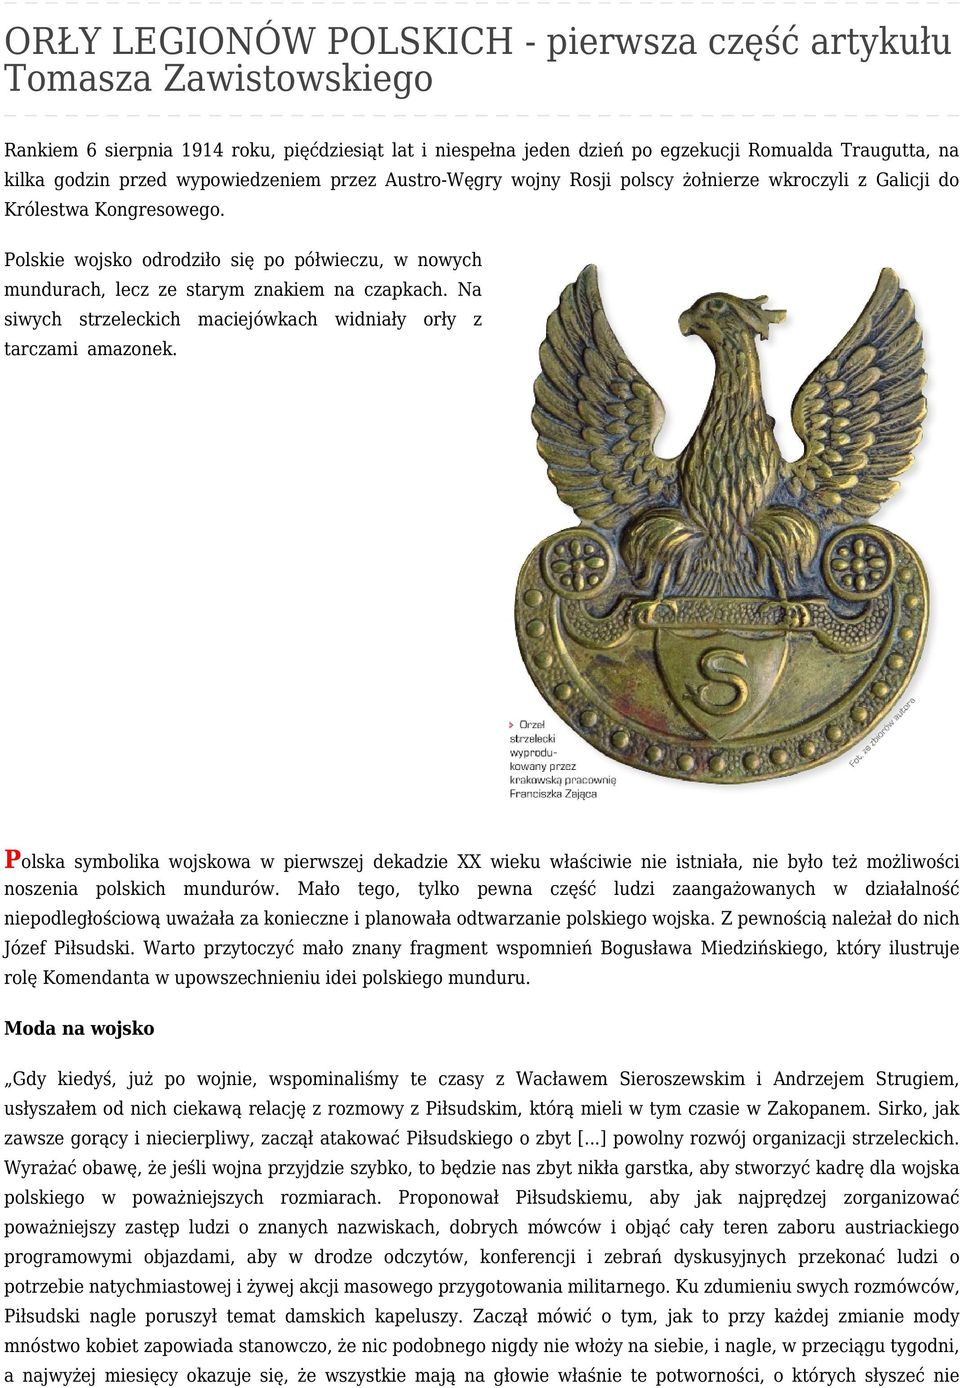 Polskie wojsko odrodziło się po półwieczu, w nowych mundurach, lecz ze starym znakiem na czapkach. Na siwych strzeleckich maciejówkach widniały orły z tarczami amazonek.